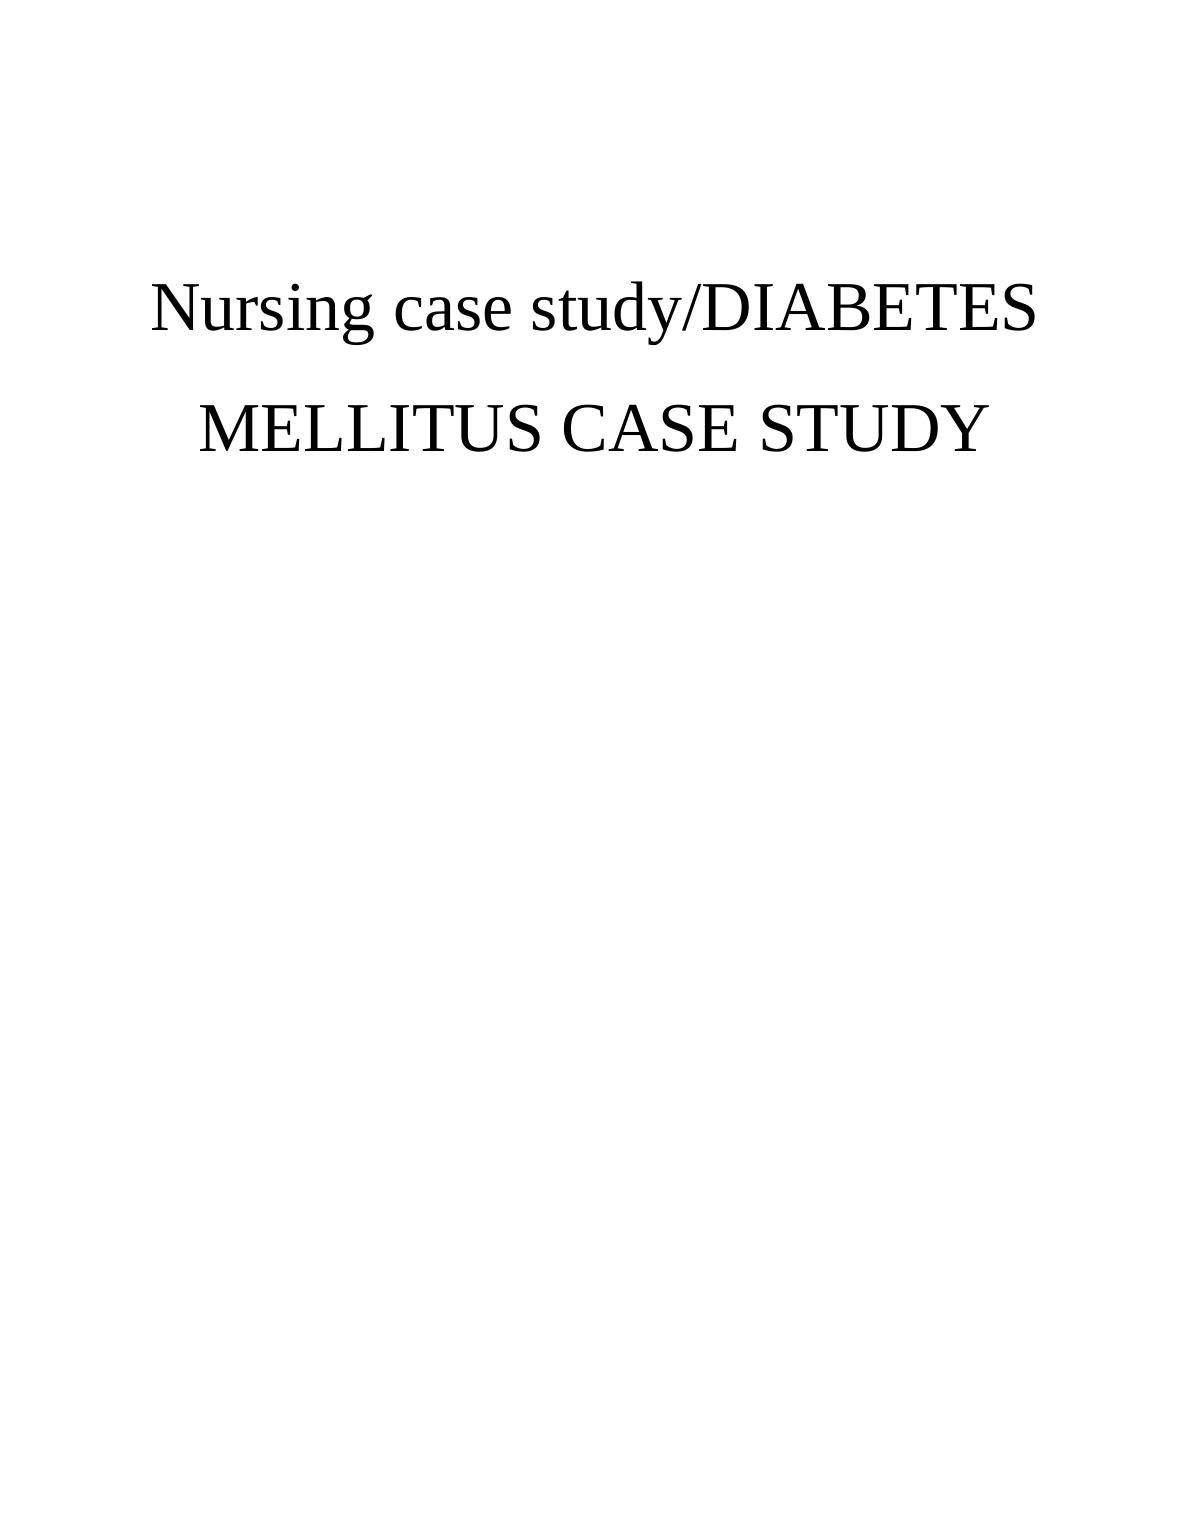 nursing case study on diabetes mellitus